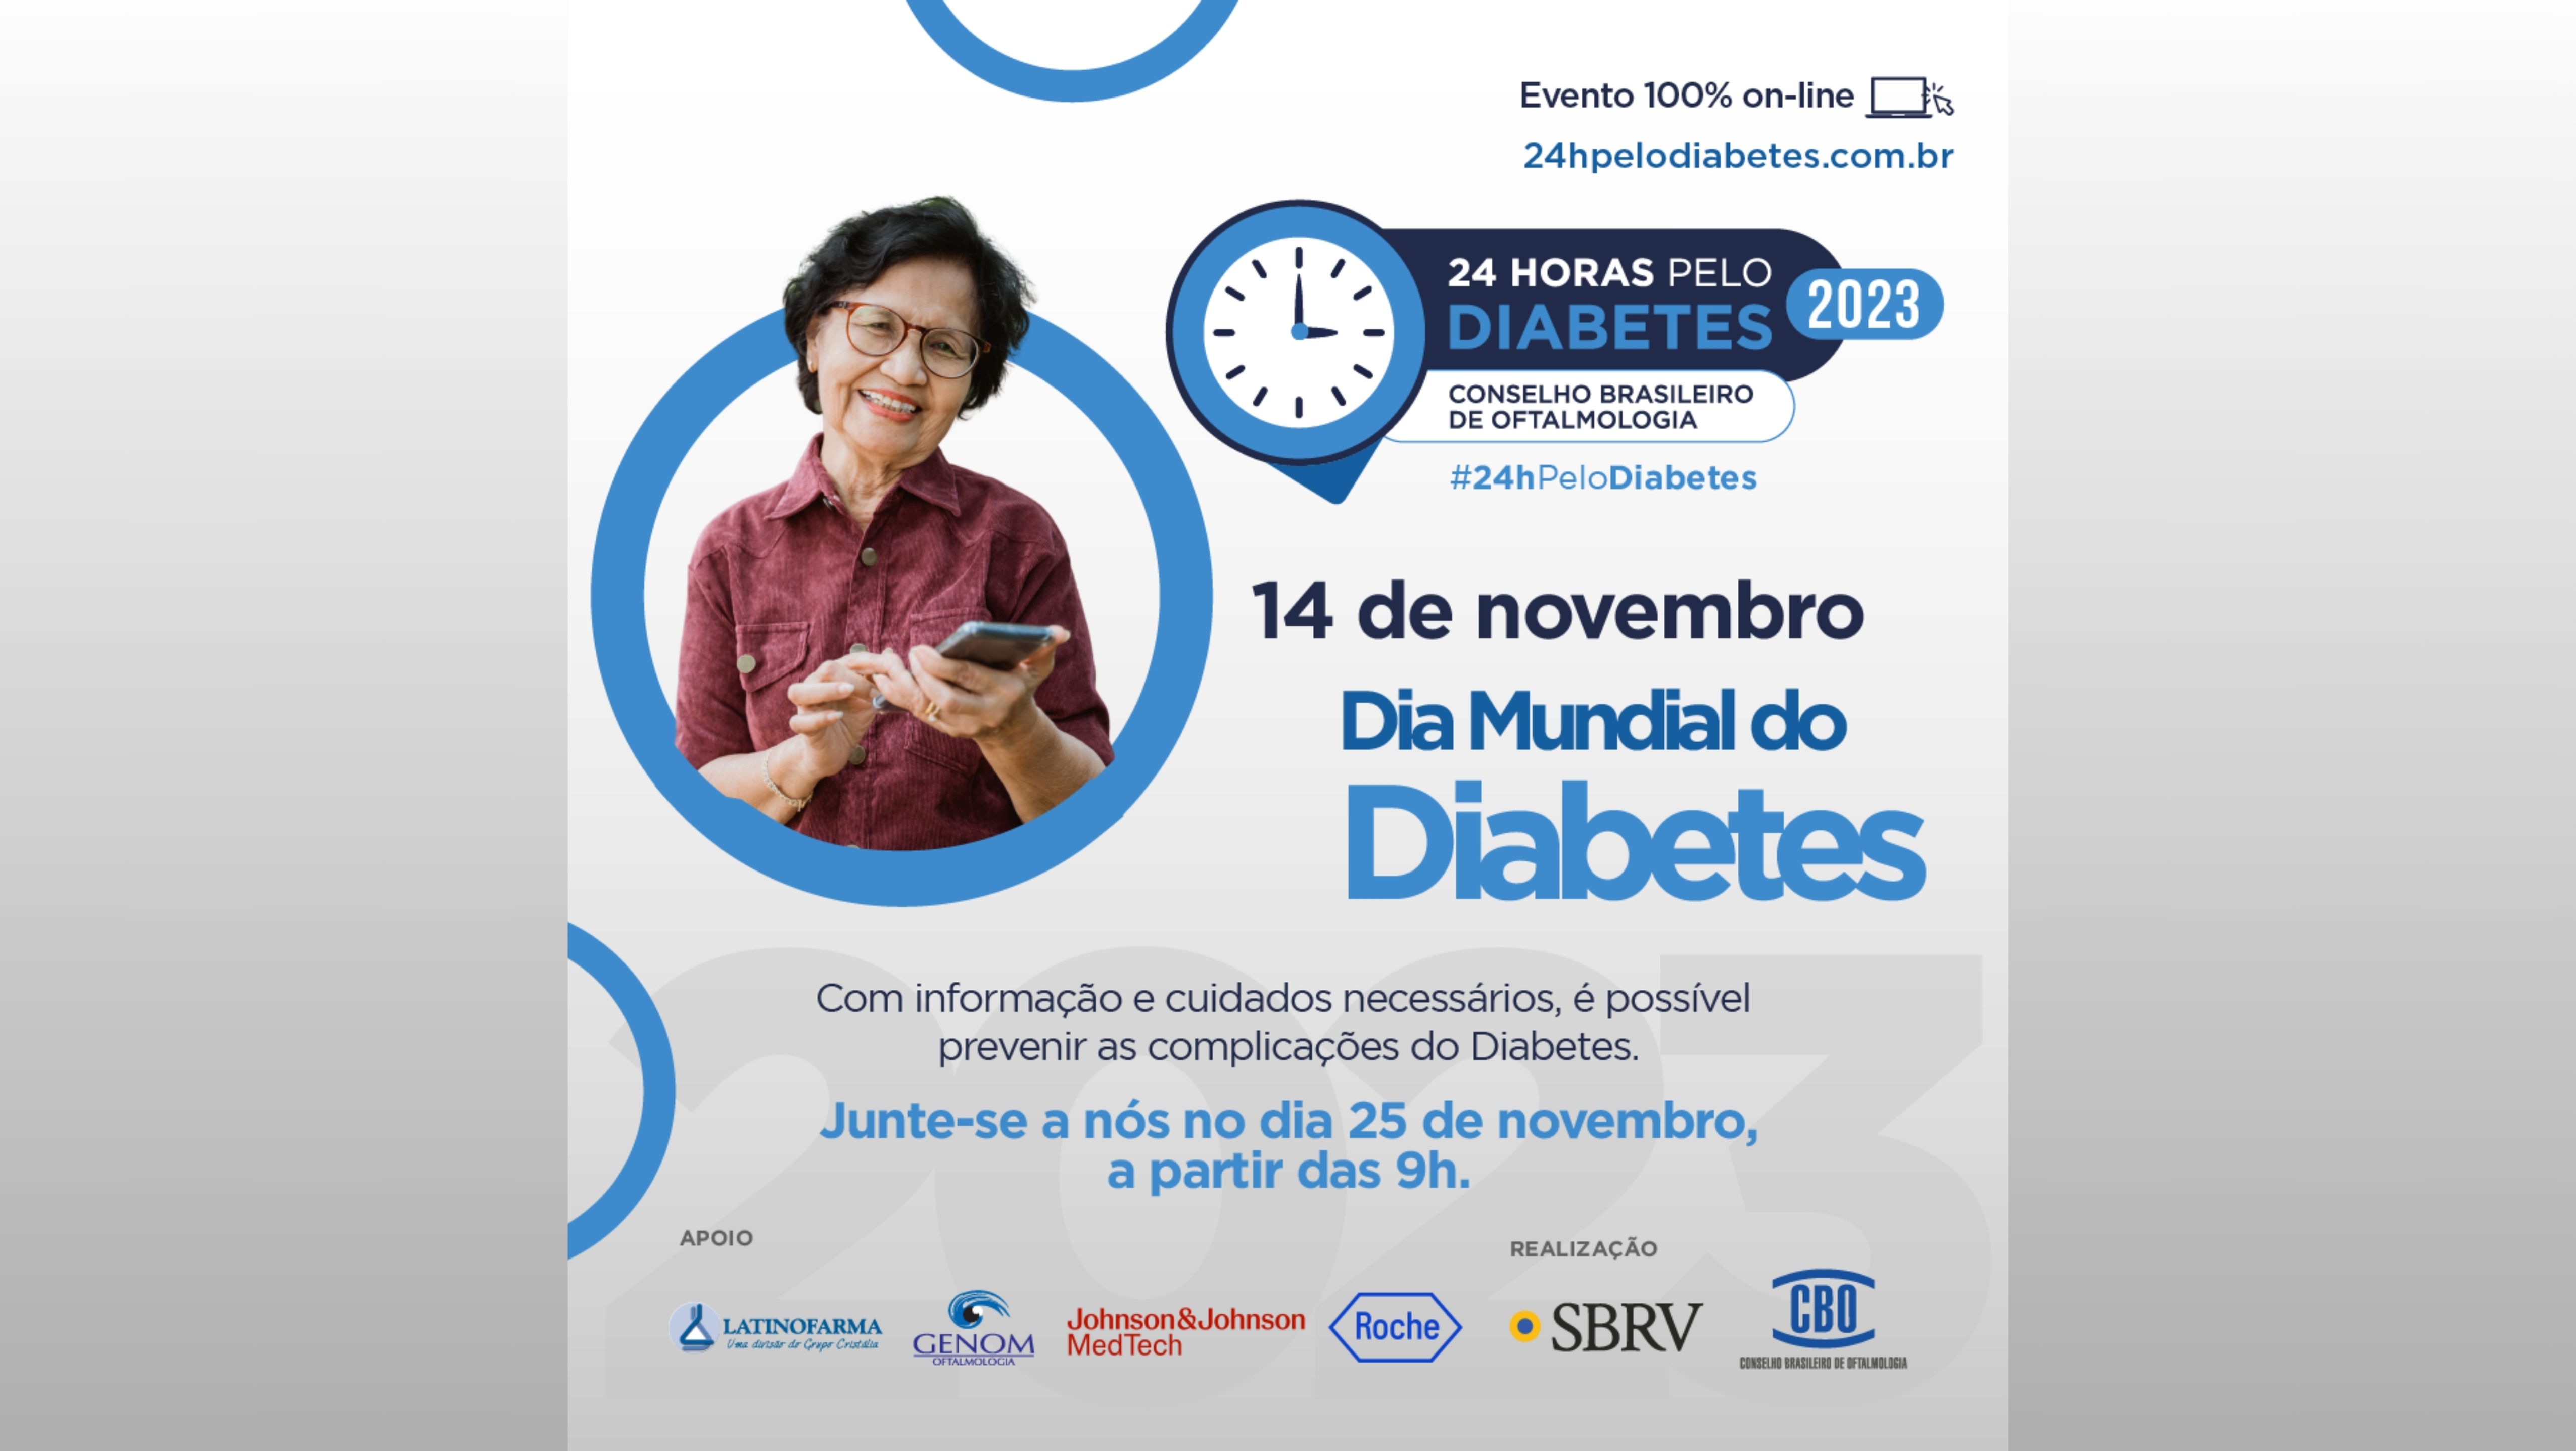 14 de novembro - Dia Mundial do Diabetes